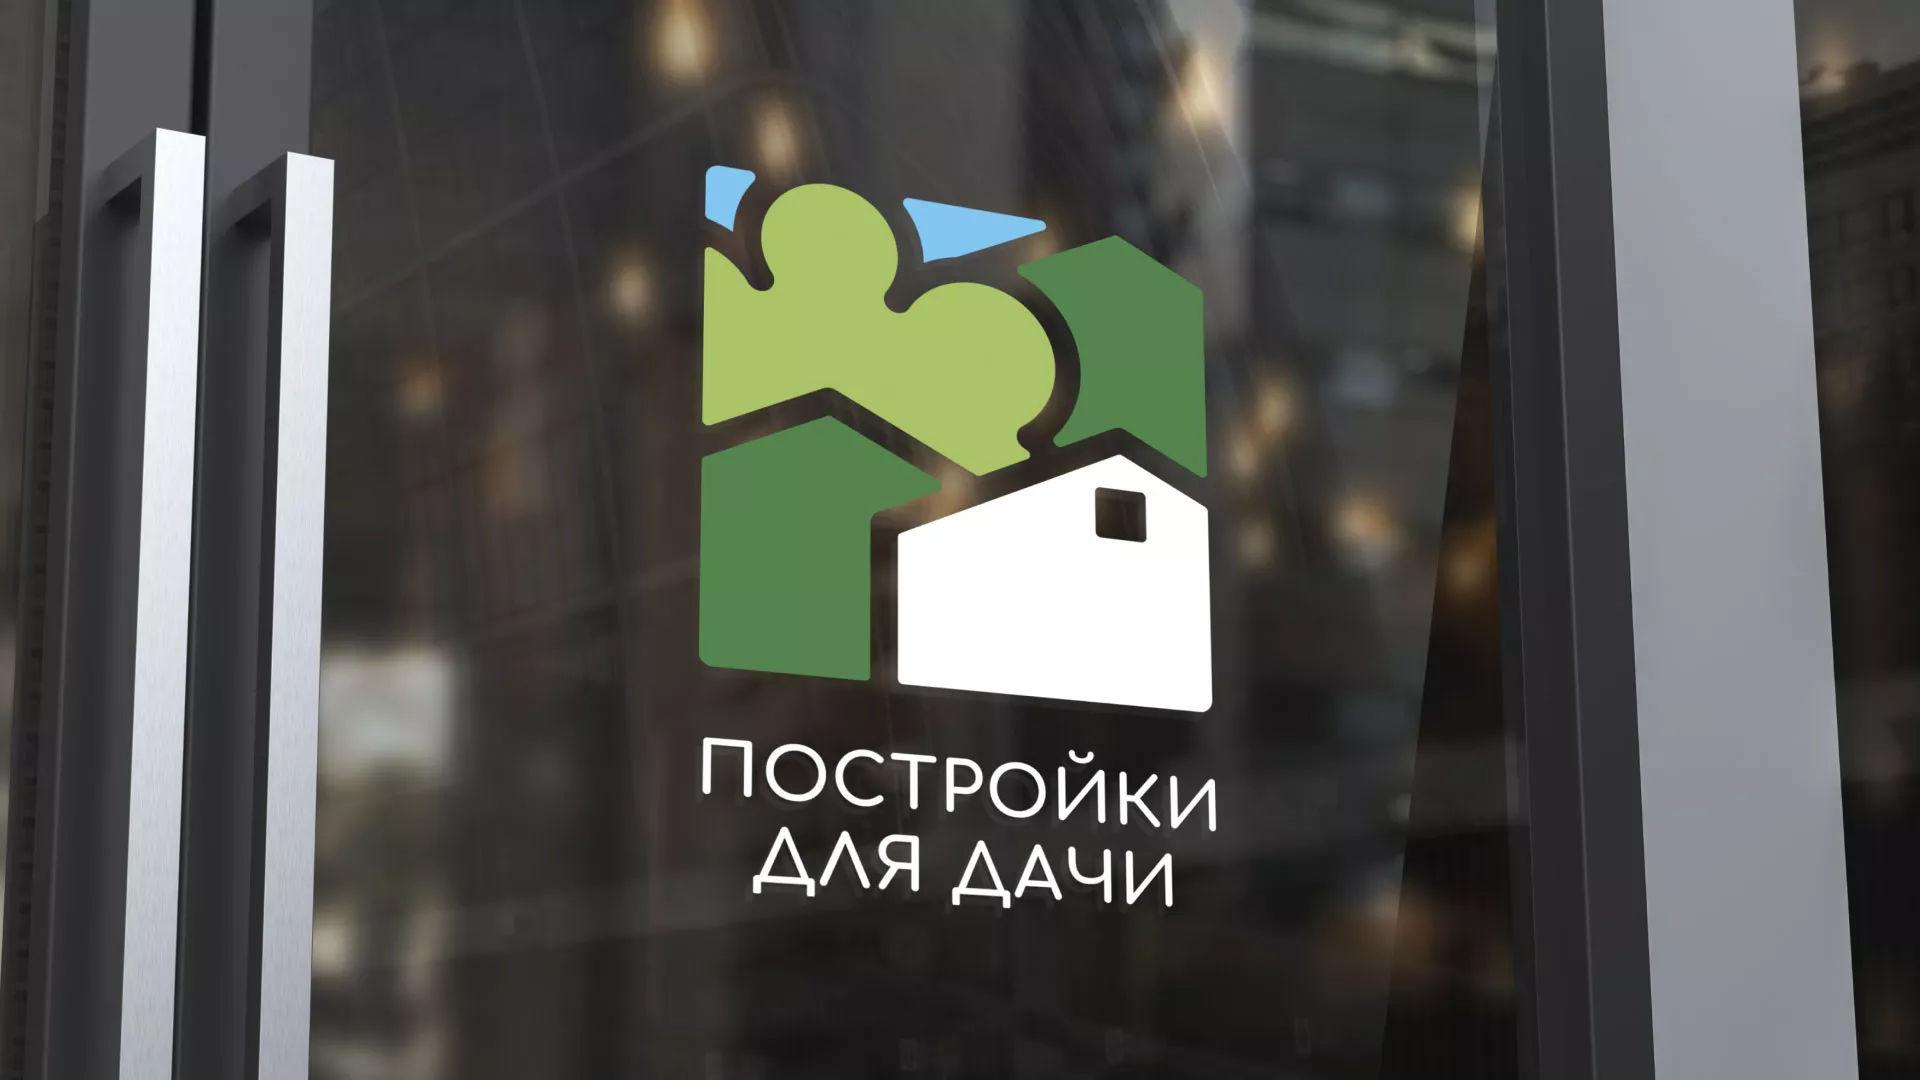 Разработка логотипа в Железноводске для компании «Постройки для дачи»